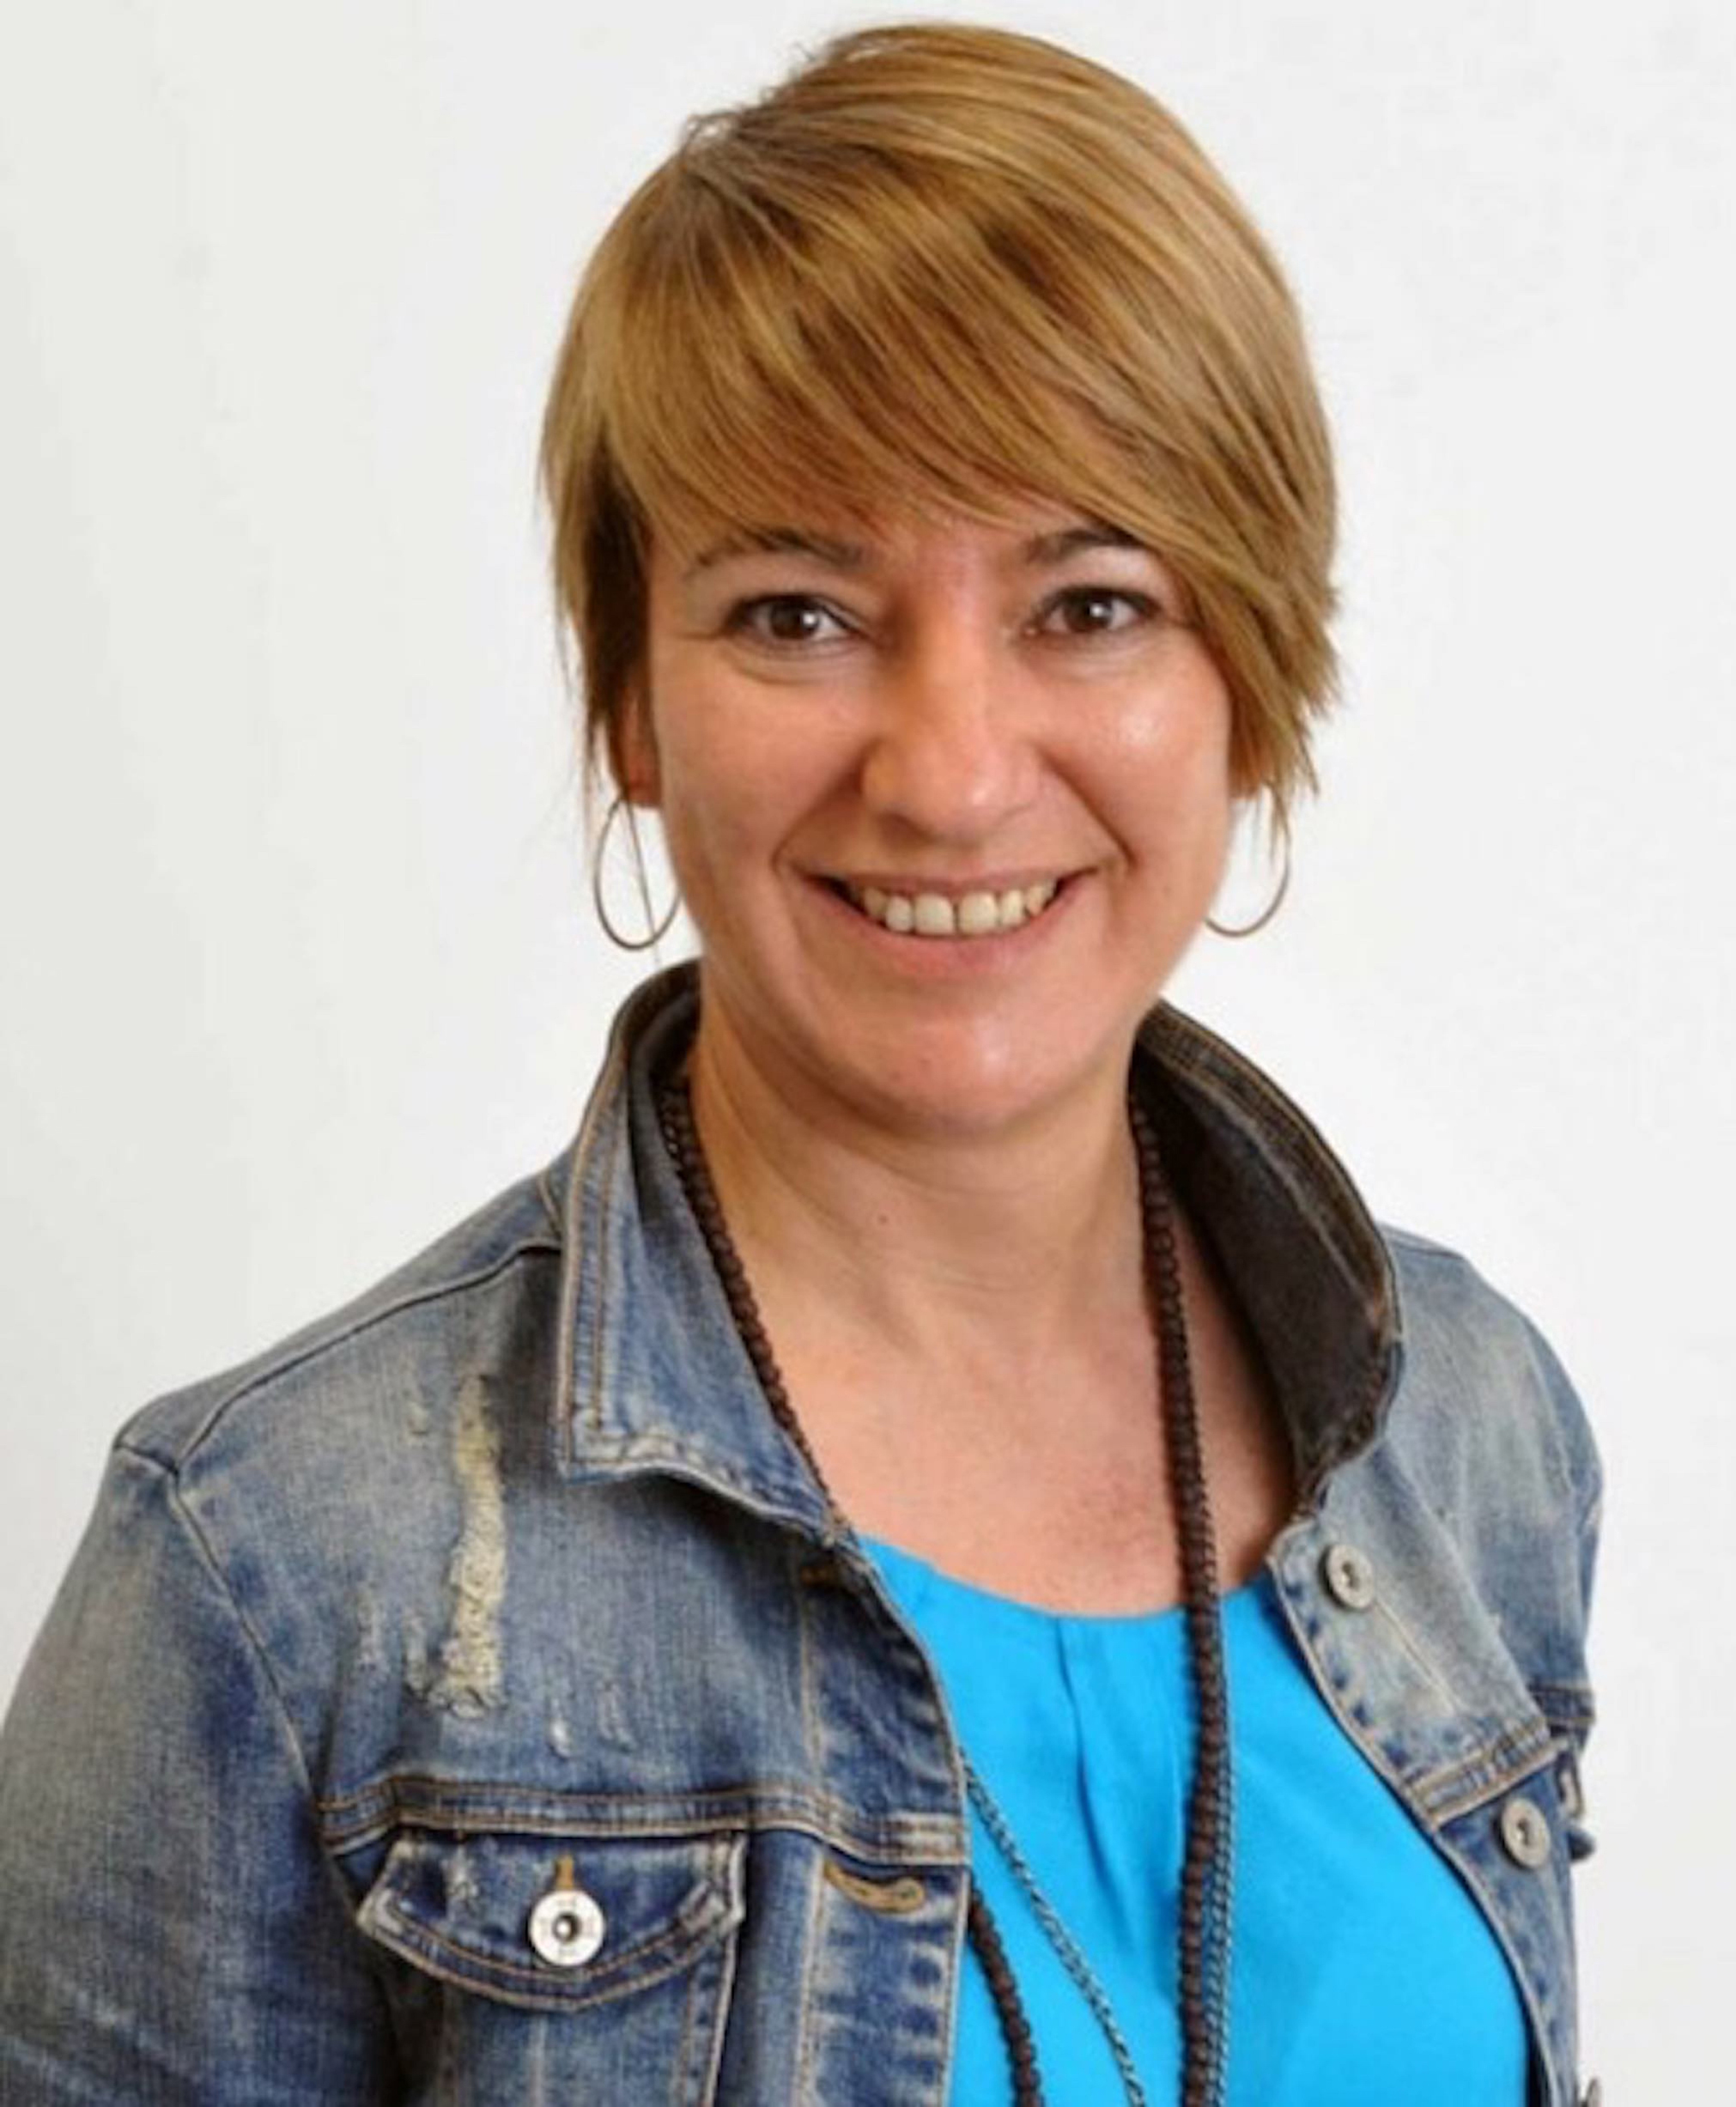 La diputada Lourdes Ciuró serà la candidata del PDeCAT a l'alcaldia de Sabadell el 2019